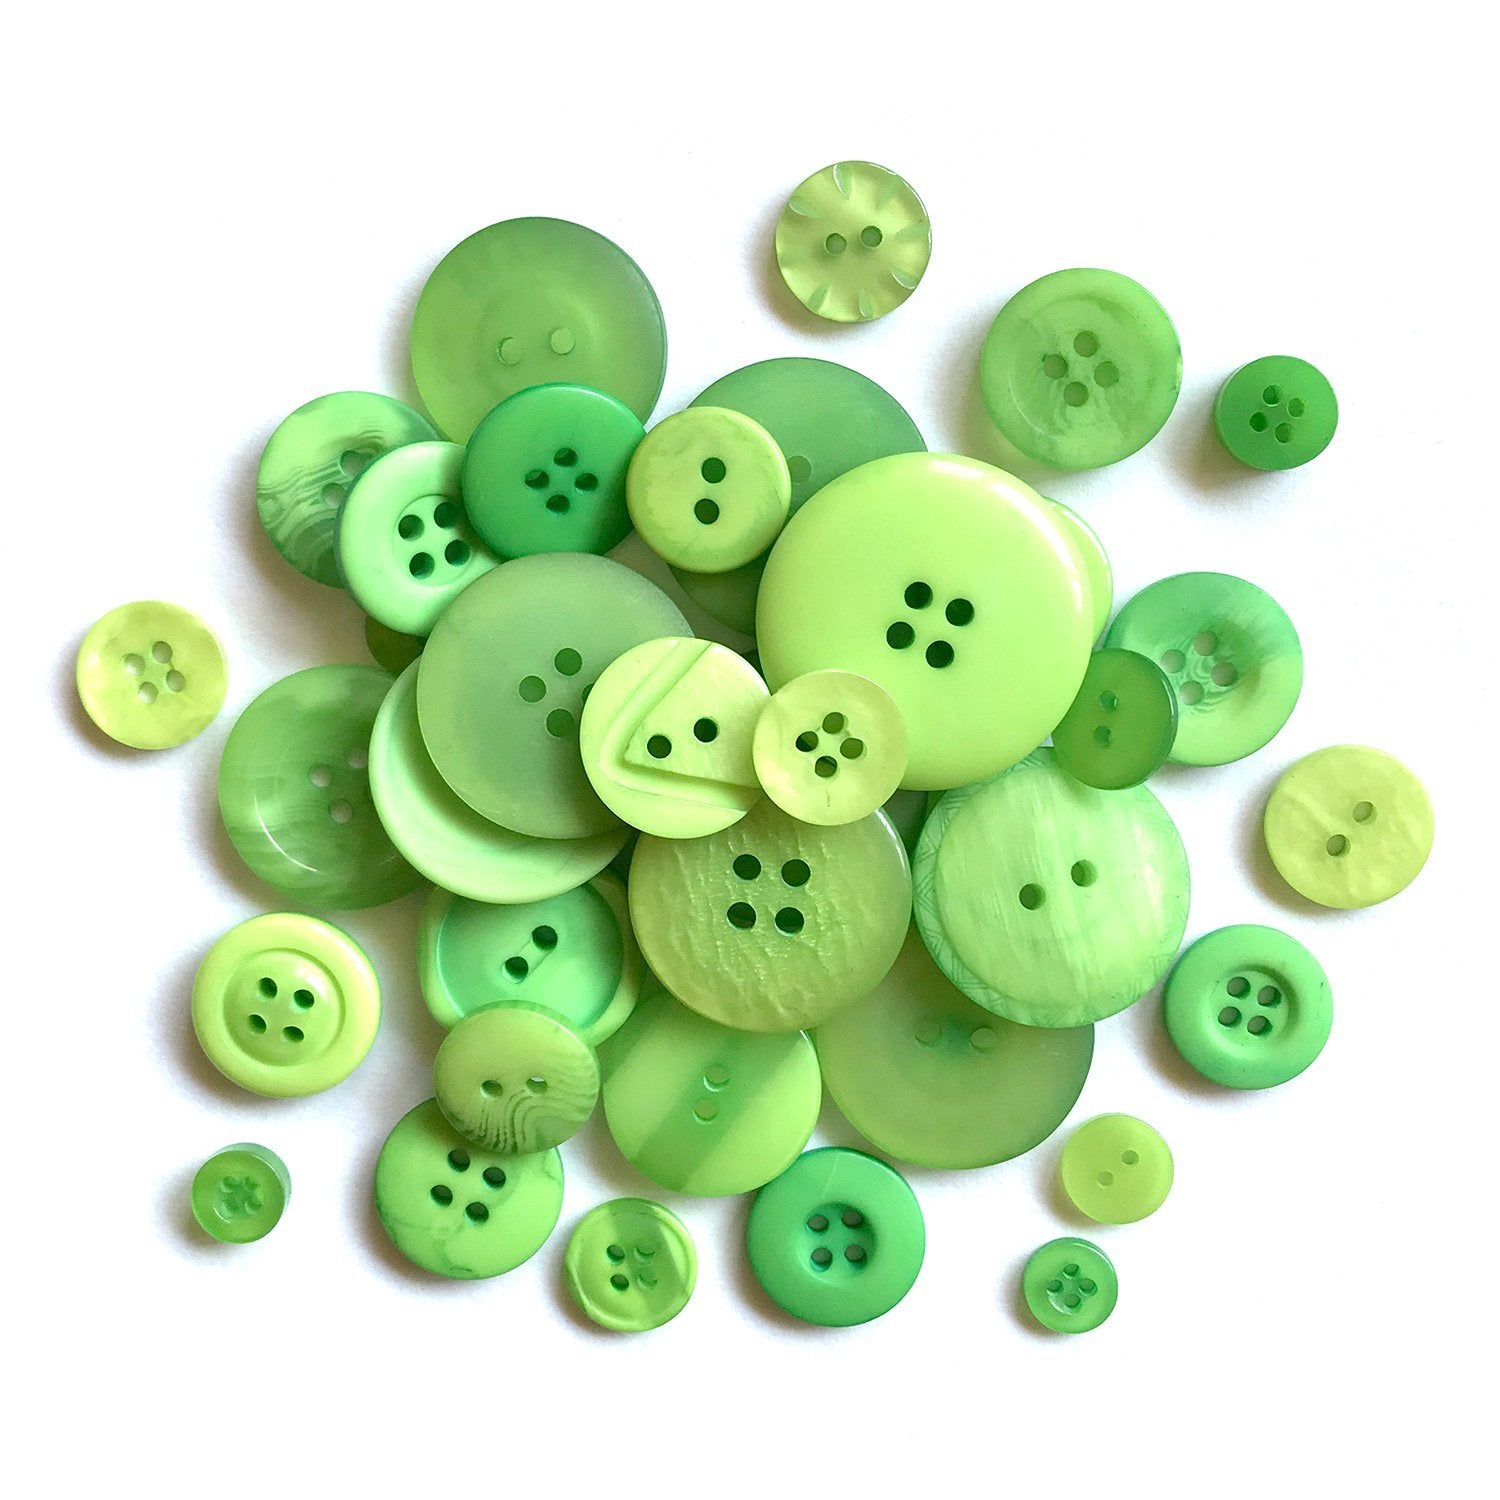 Spring Green Bulk Buttons